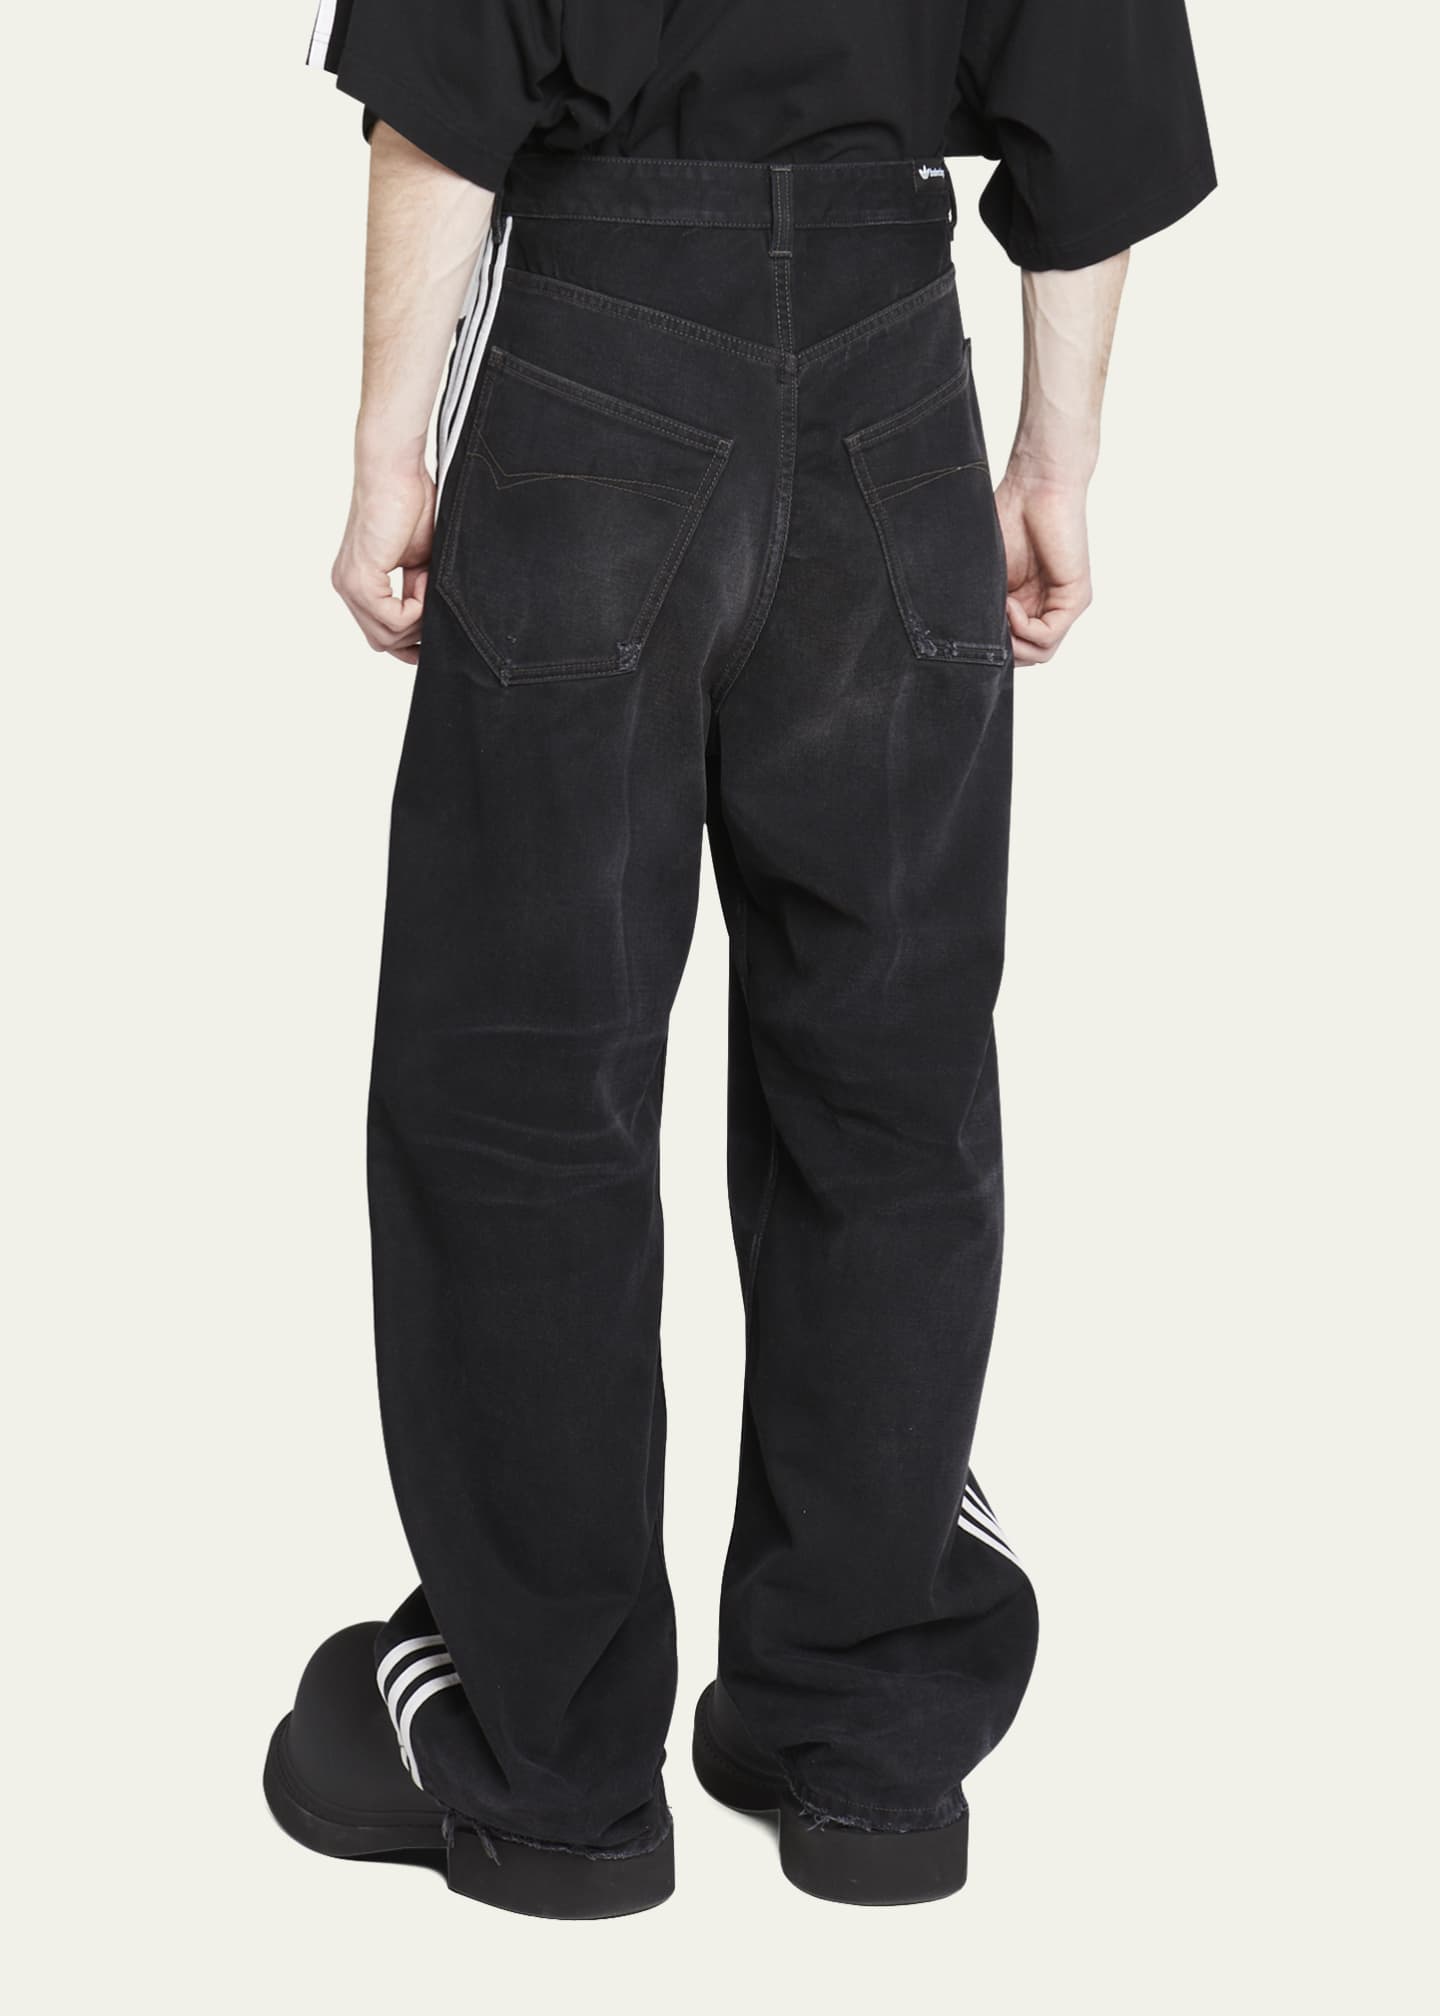 Balenciaga x Adidas Men's 3-Stripes Baggy Jeans